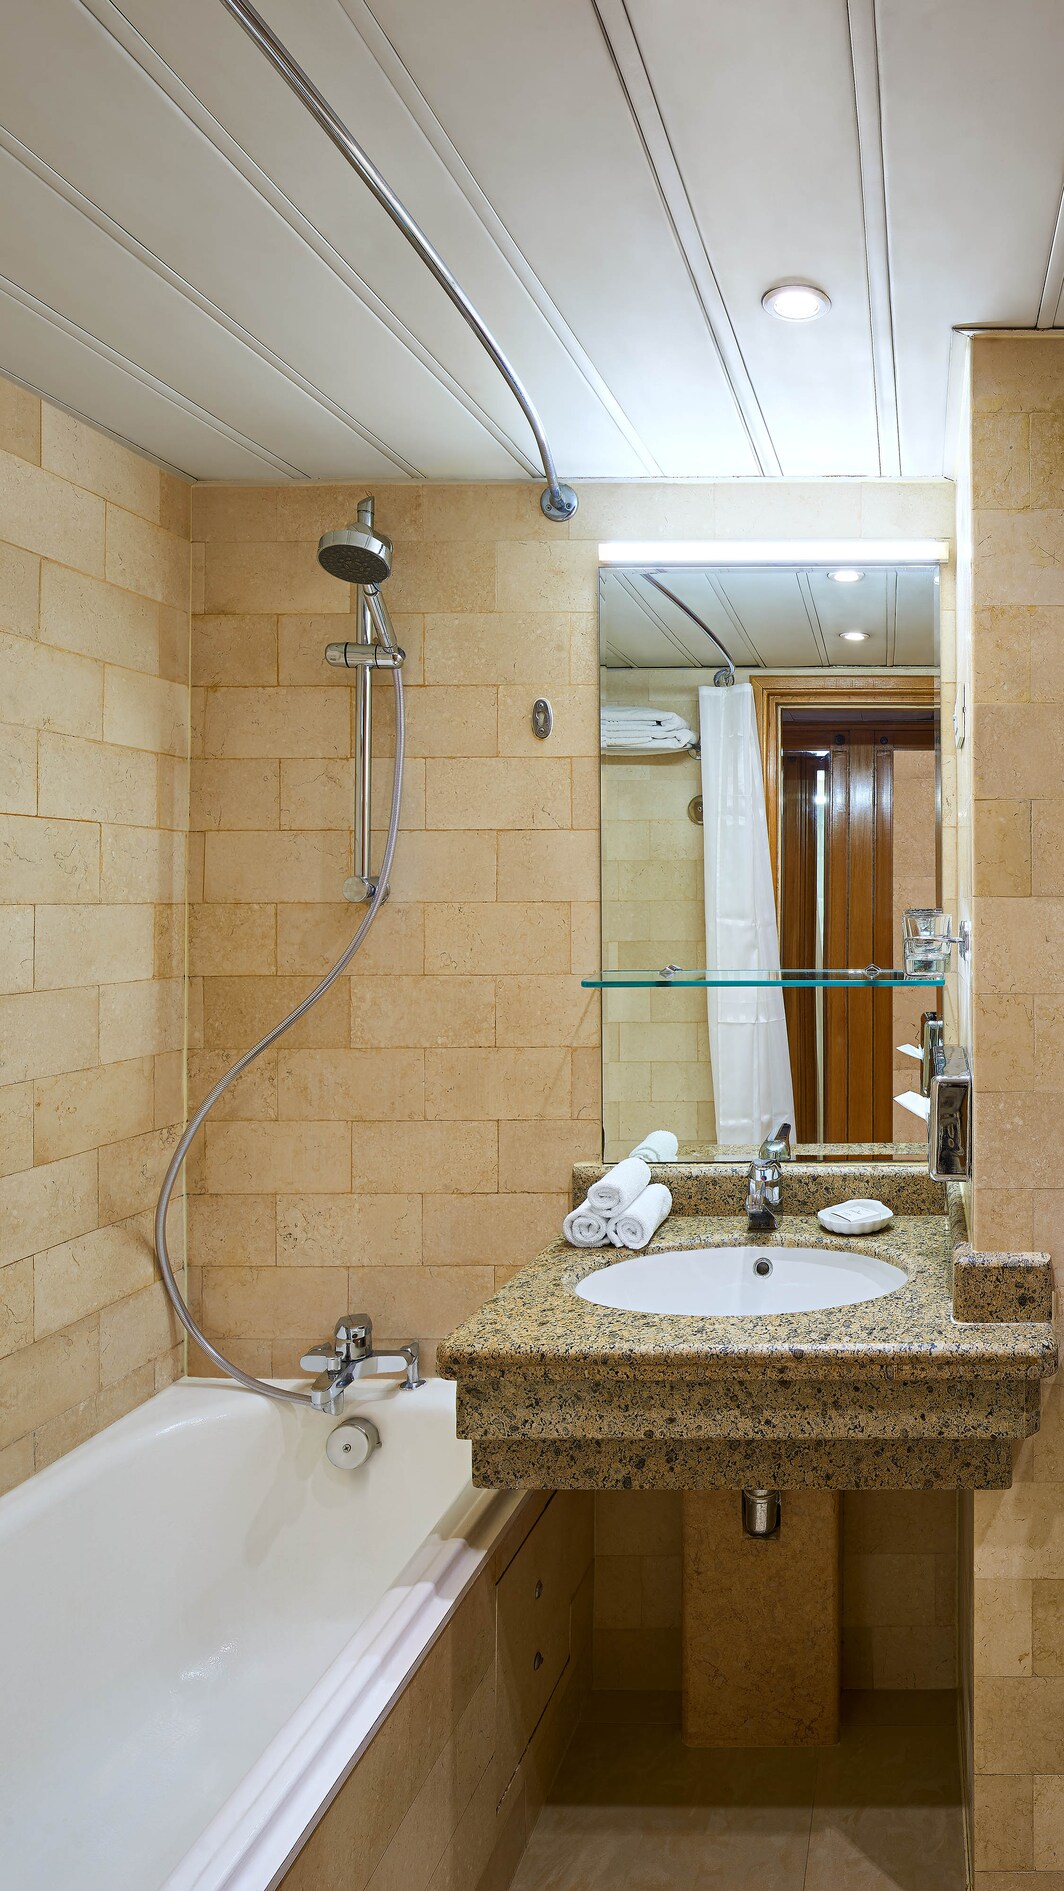 Гостевая ванная комната в делюксе – совмещенные ванна и душ